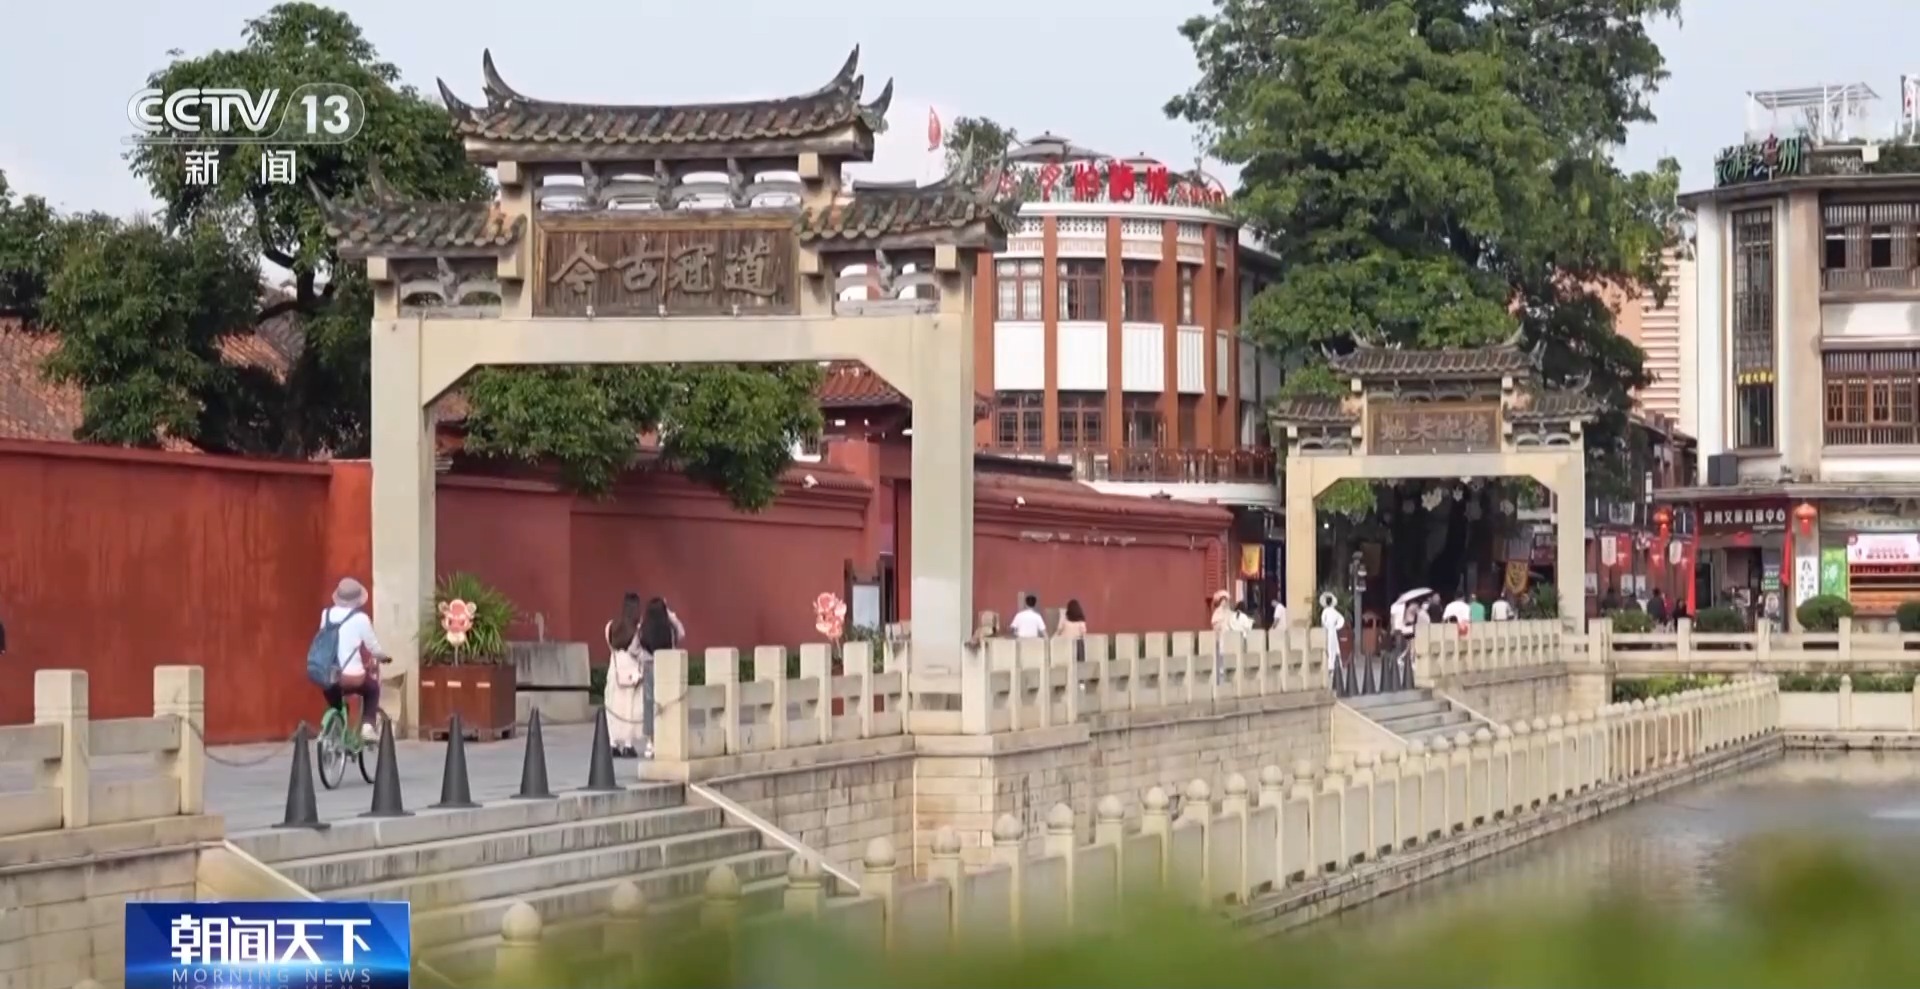 文化中国行丨点亮“闽南红” 在这座千年古城里见人、见物、见生活